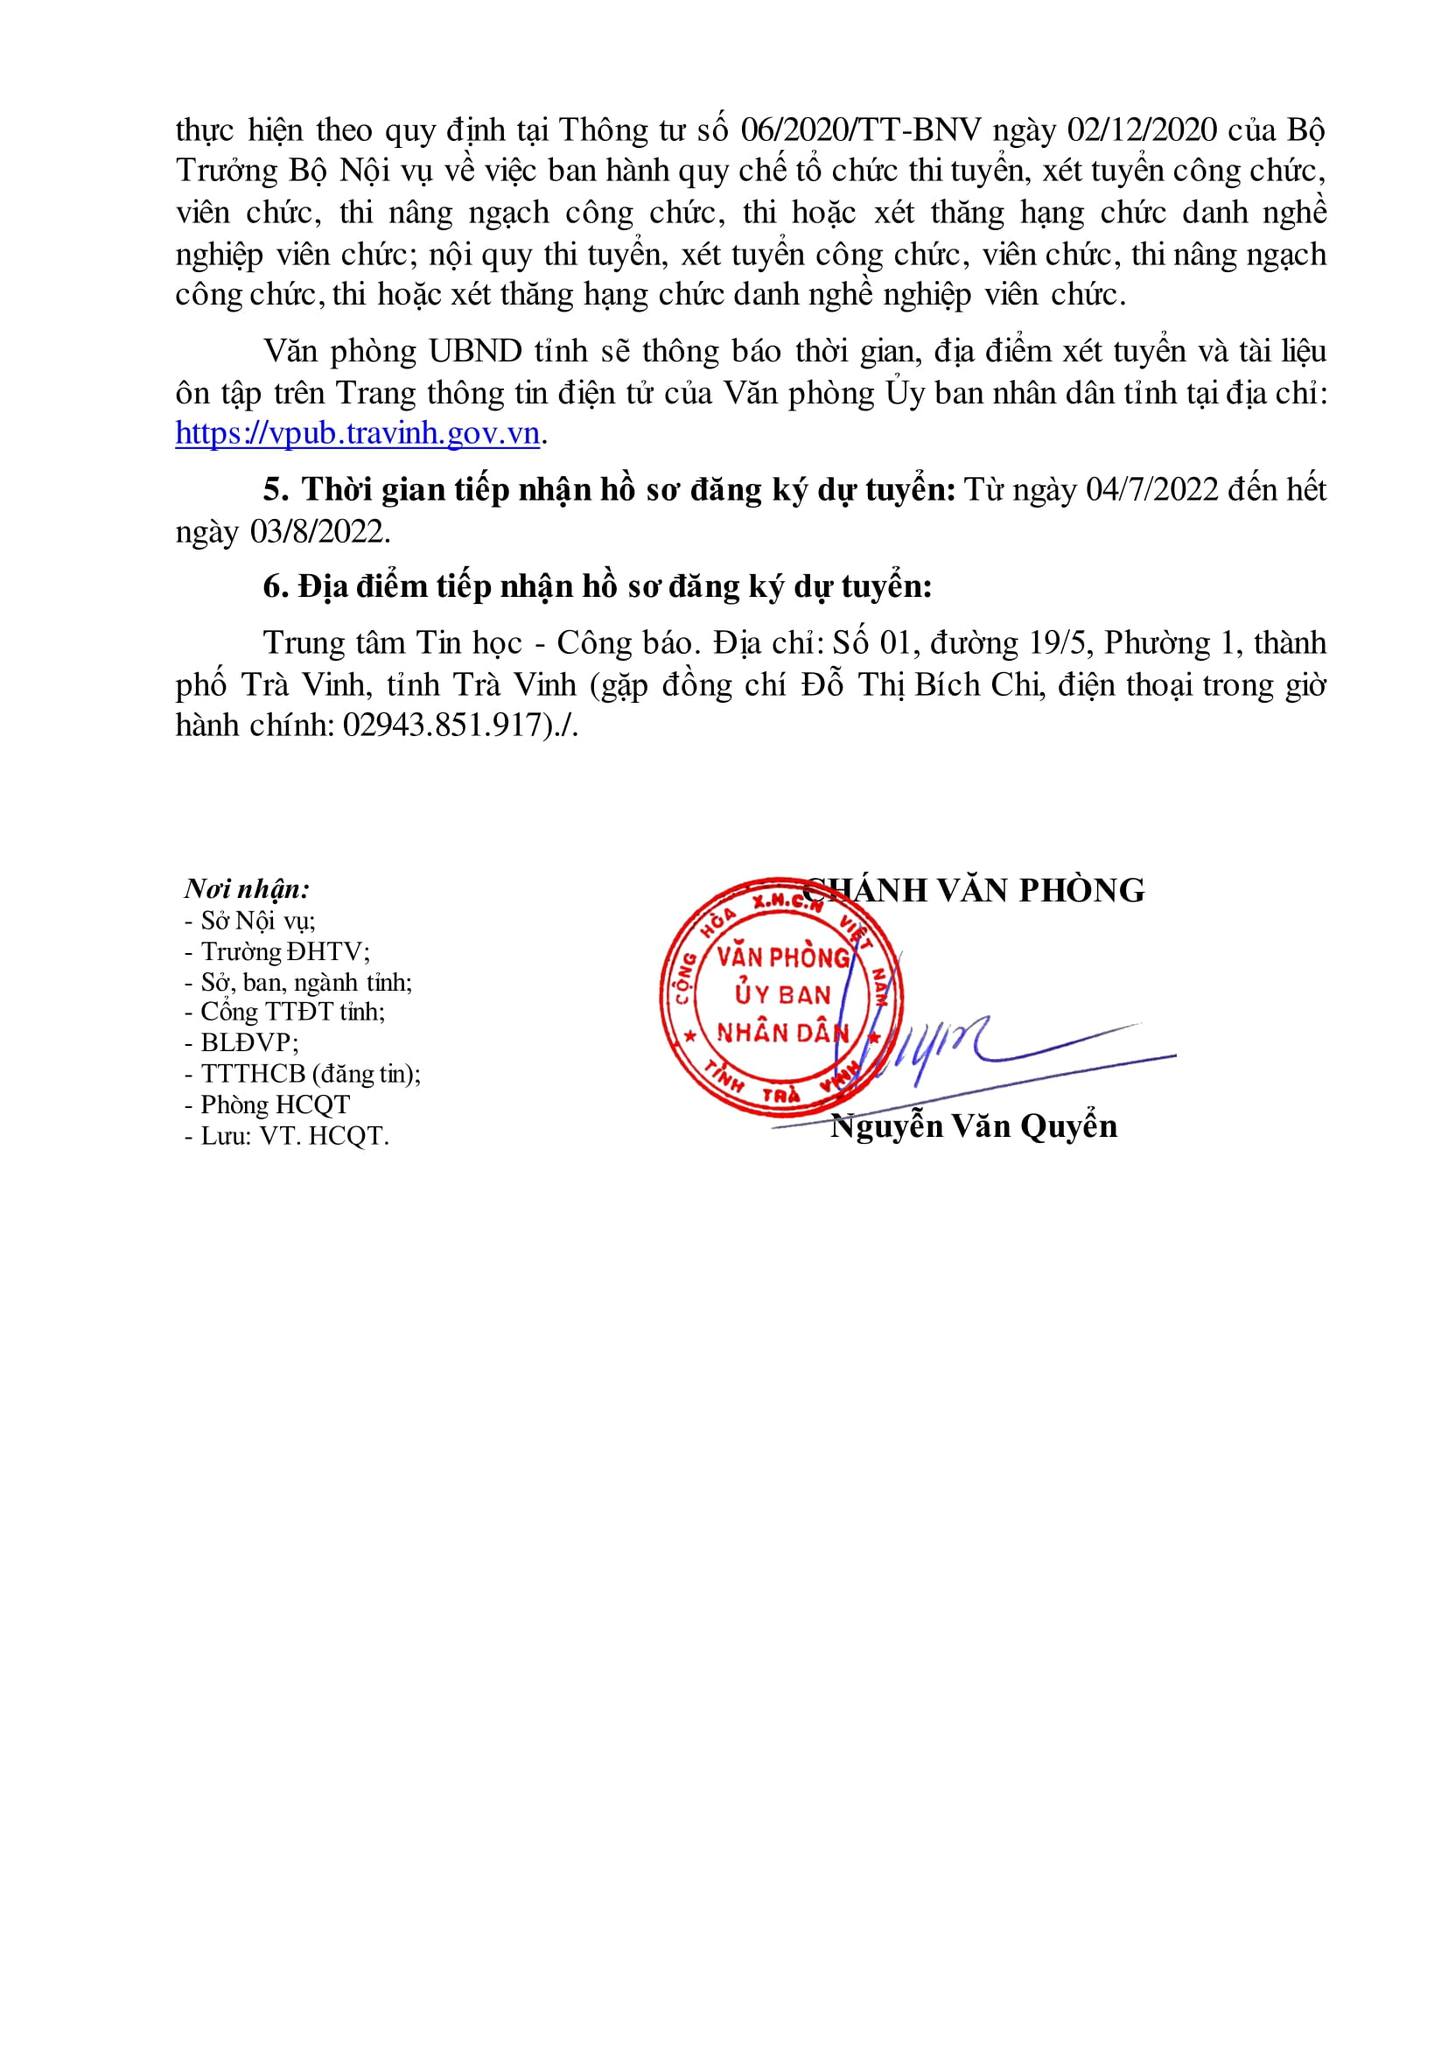 Văn phòng UBND tỉnh Trà Vinh tuyển dụng viên chức năm 2022